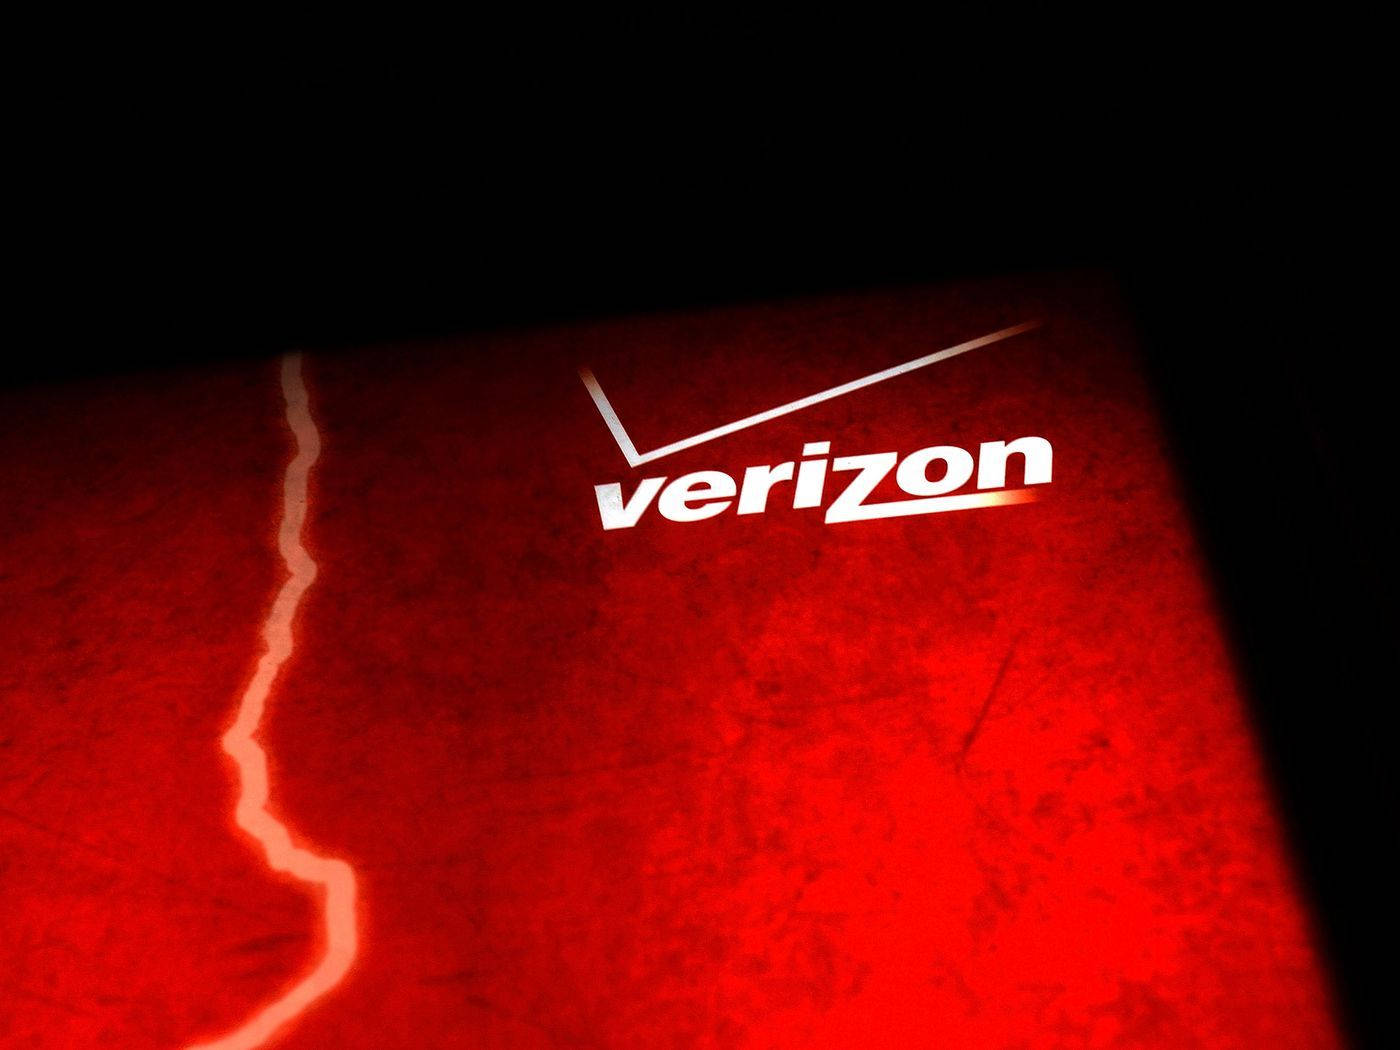 Verizon In Striking Red